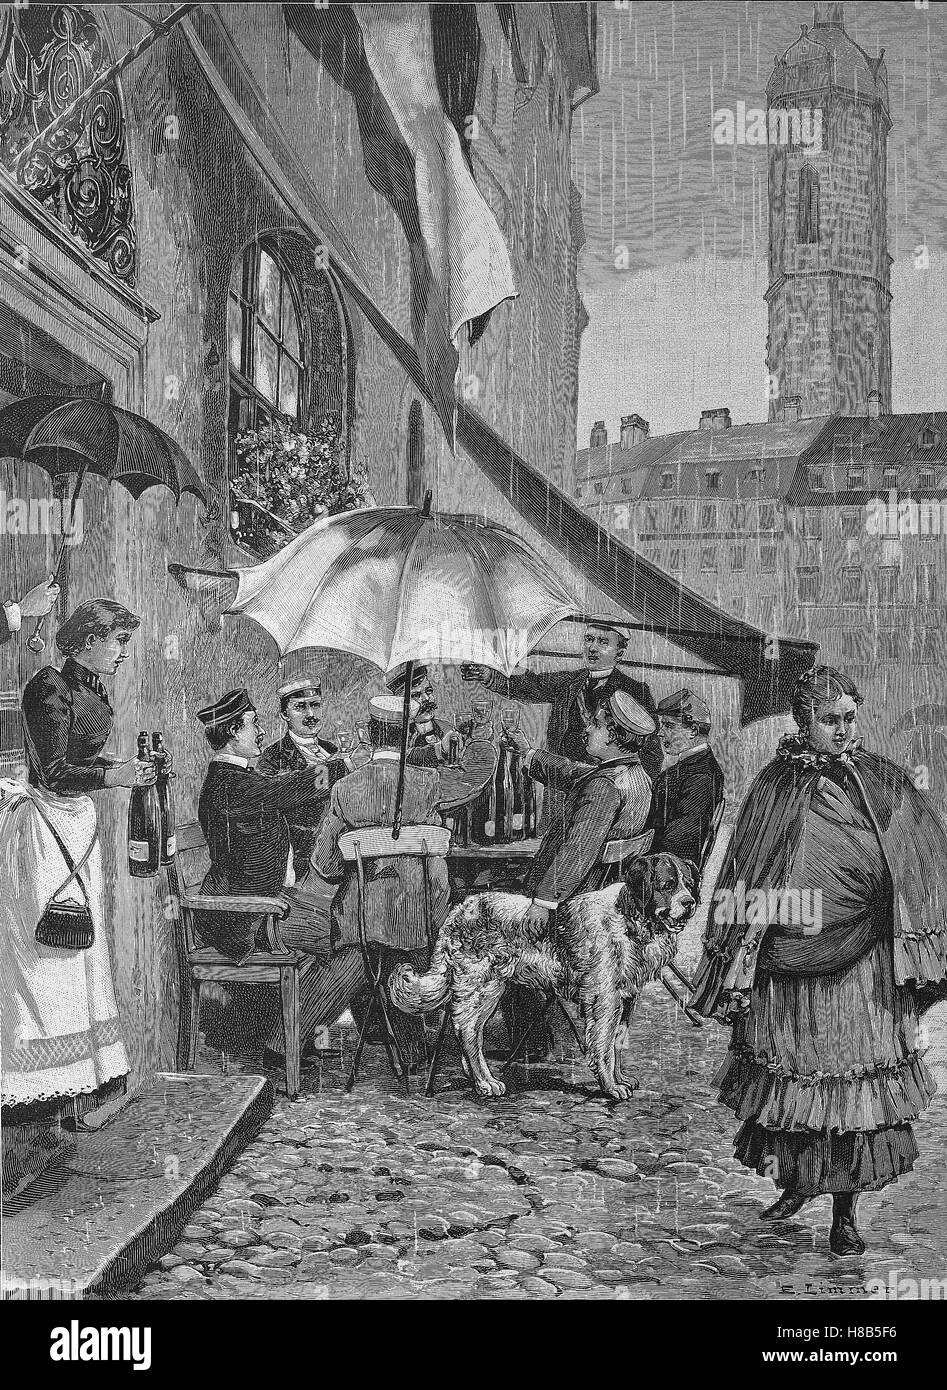 Jour de pluie en face d'une taverne à Jena, Allemagne, gravure sur bois de 1892 Banque D'Images